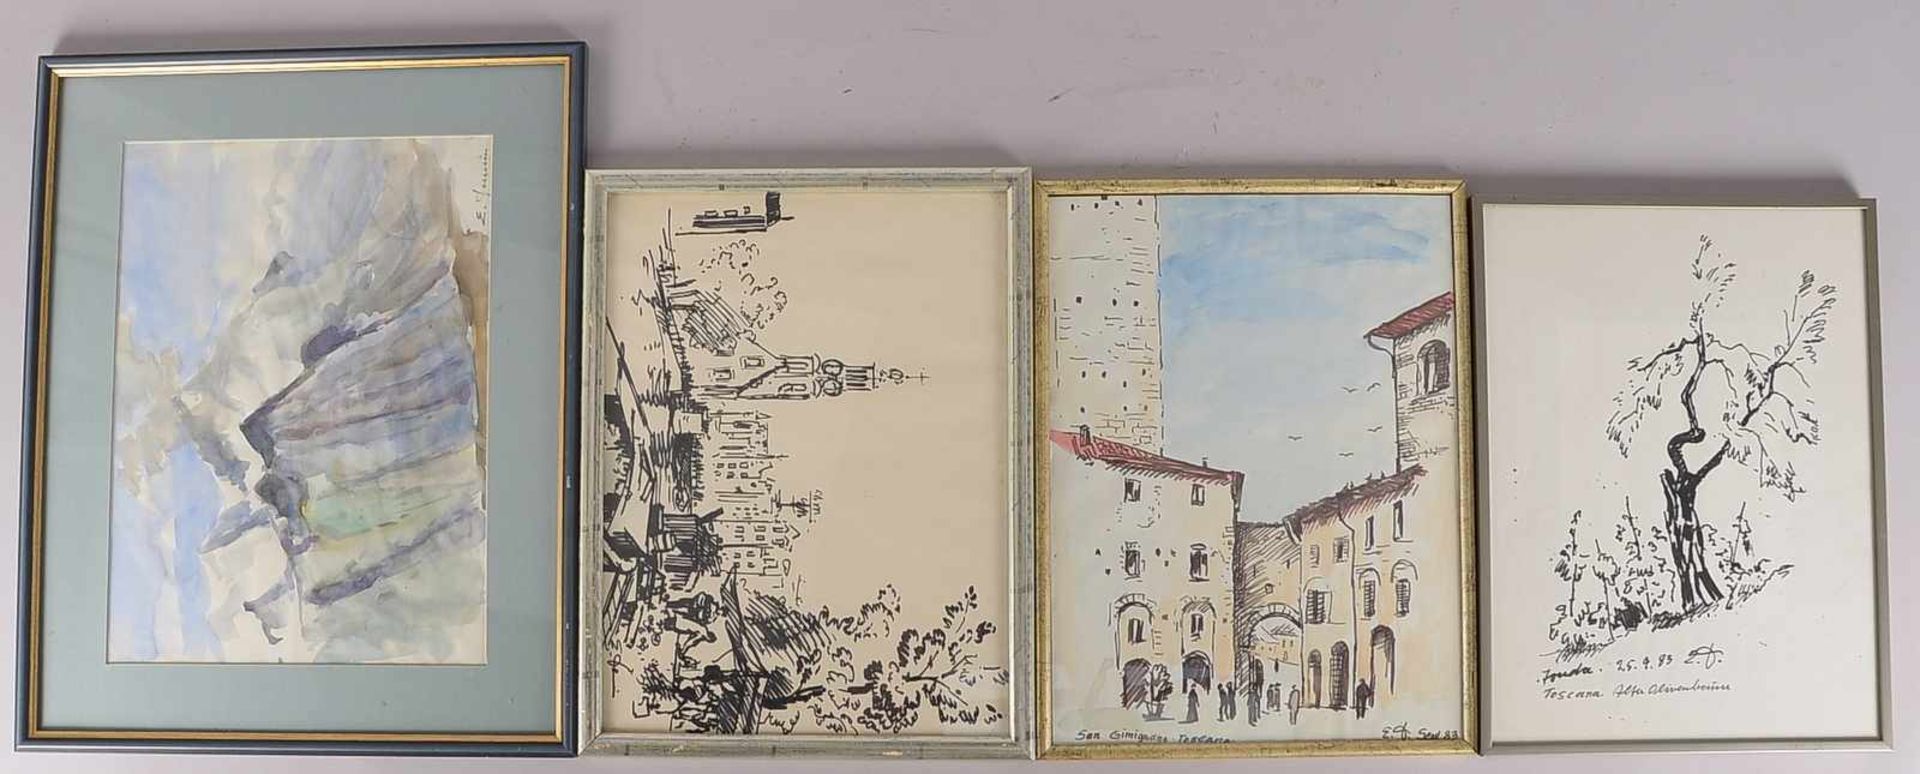 Dammin, Erich (1911 - 1997), kleines Werkkonvolut, Aquarelle/Zeichnungen, 'Italienreise', 4 Blätter,